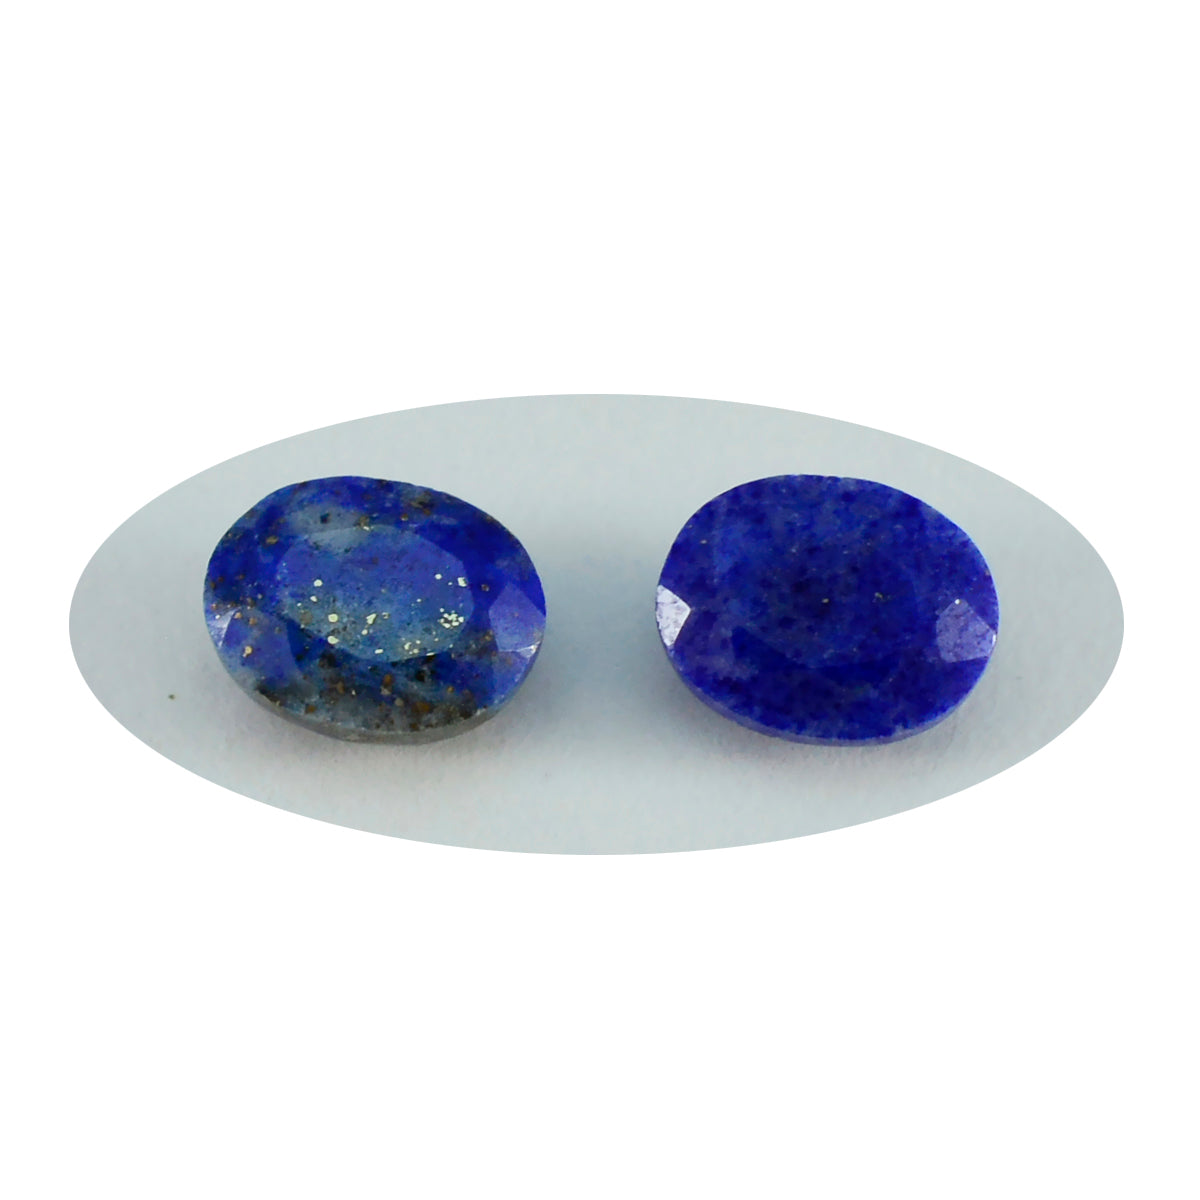 Riyogems 1 pièce véritable lapis lazuli bleu à facettes 4x6mm forme ovale jolie pierre précieuse de qualité